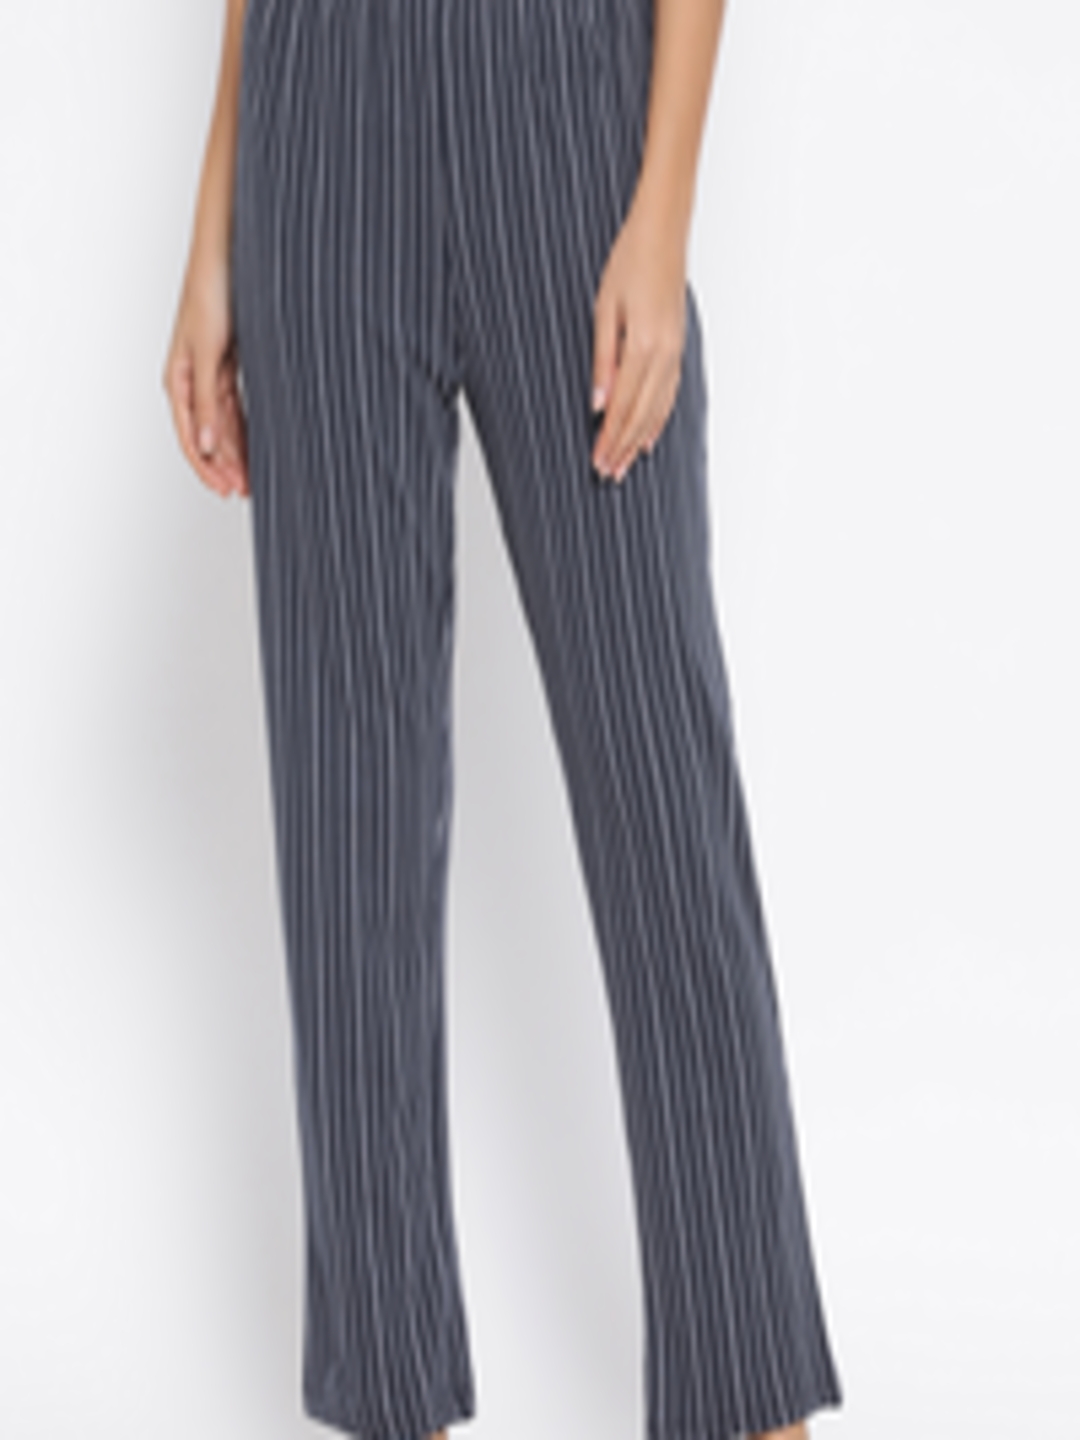 Buy Clovia Women Navy Blue & White Striped Lounge Pants LB0176K083XL ...